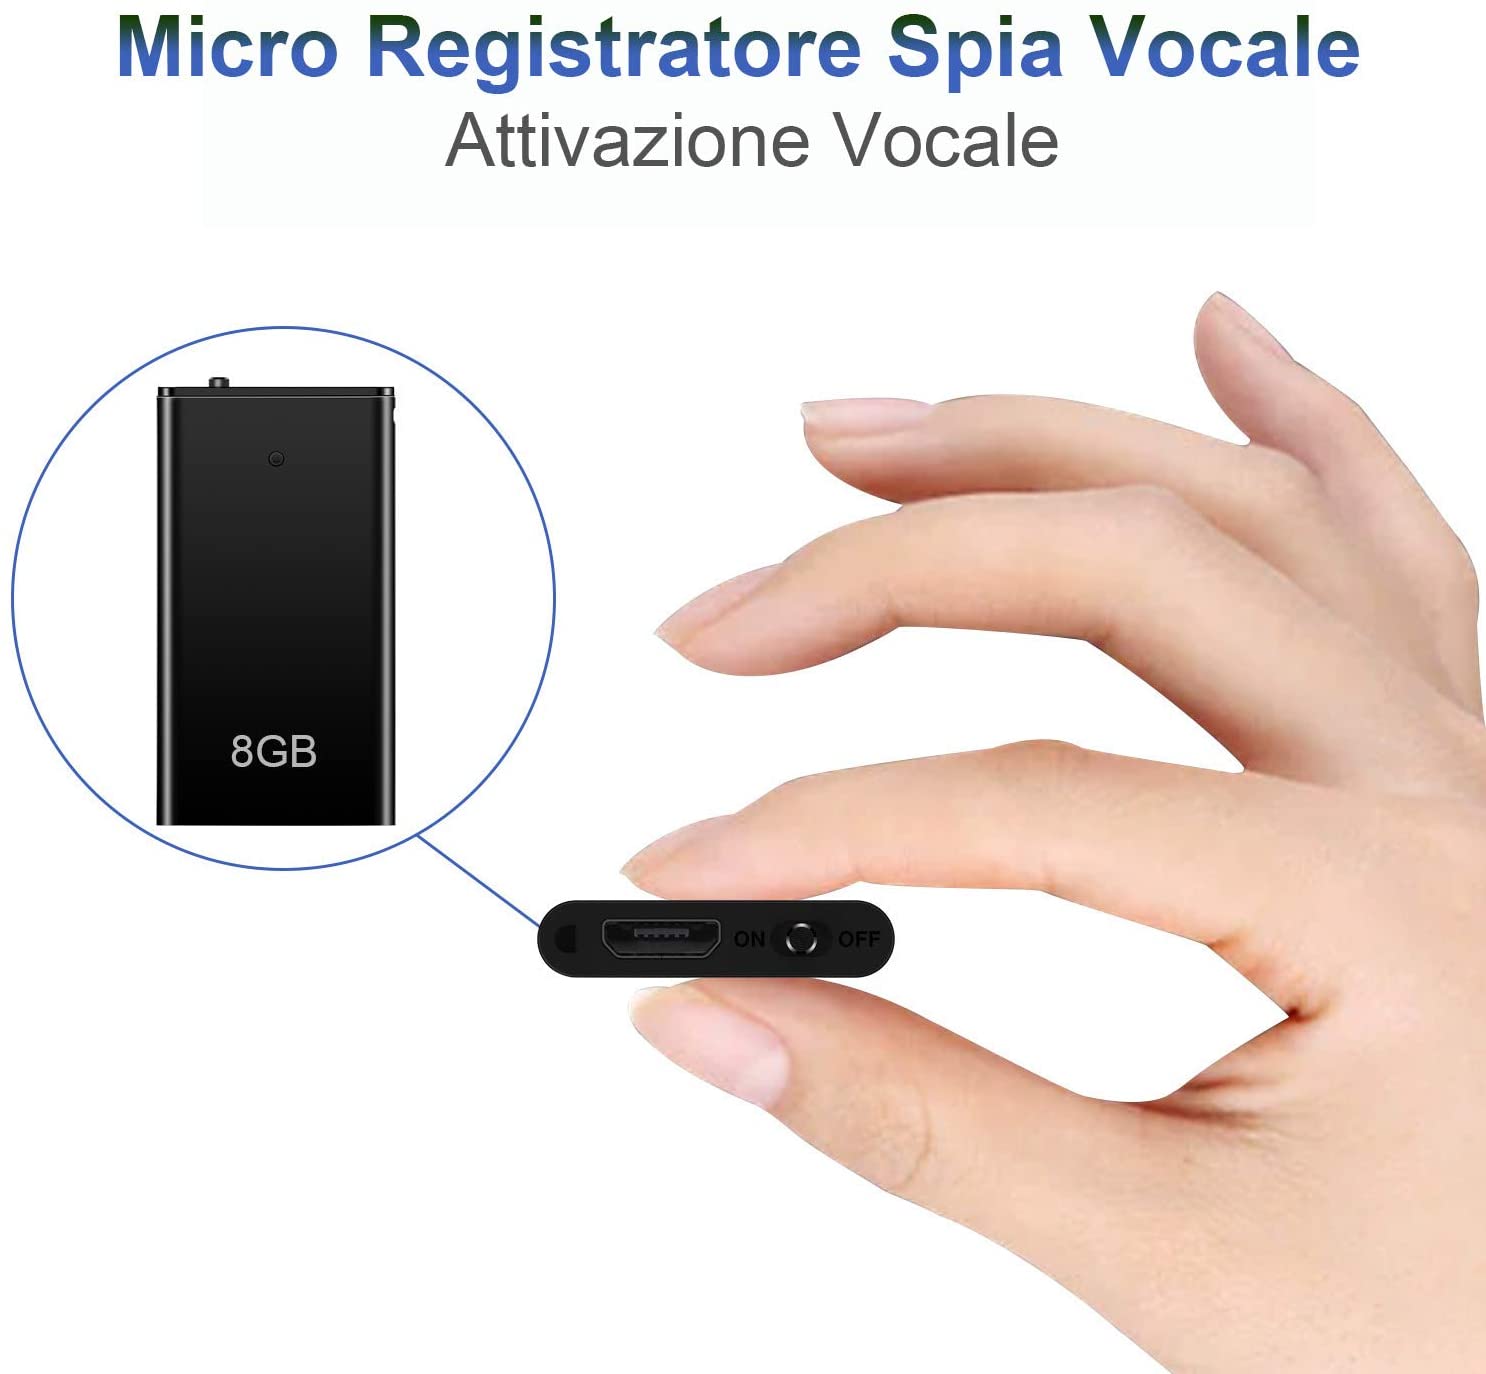 Mini Spia Registratore Vocale H+Y con Attivazione Vocale, Memoria da 8GB, Ricaricabile USB e funzioni MP3, Ideale per Lezioni, Riunioni, Interviste, Fino a 96 ore